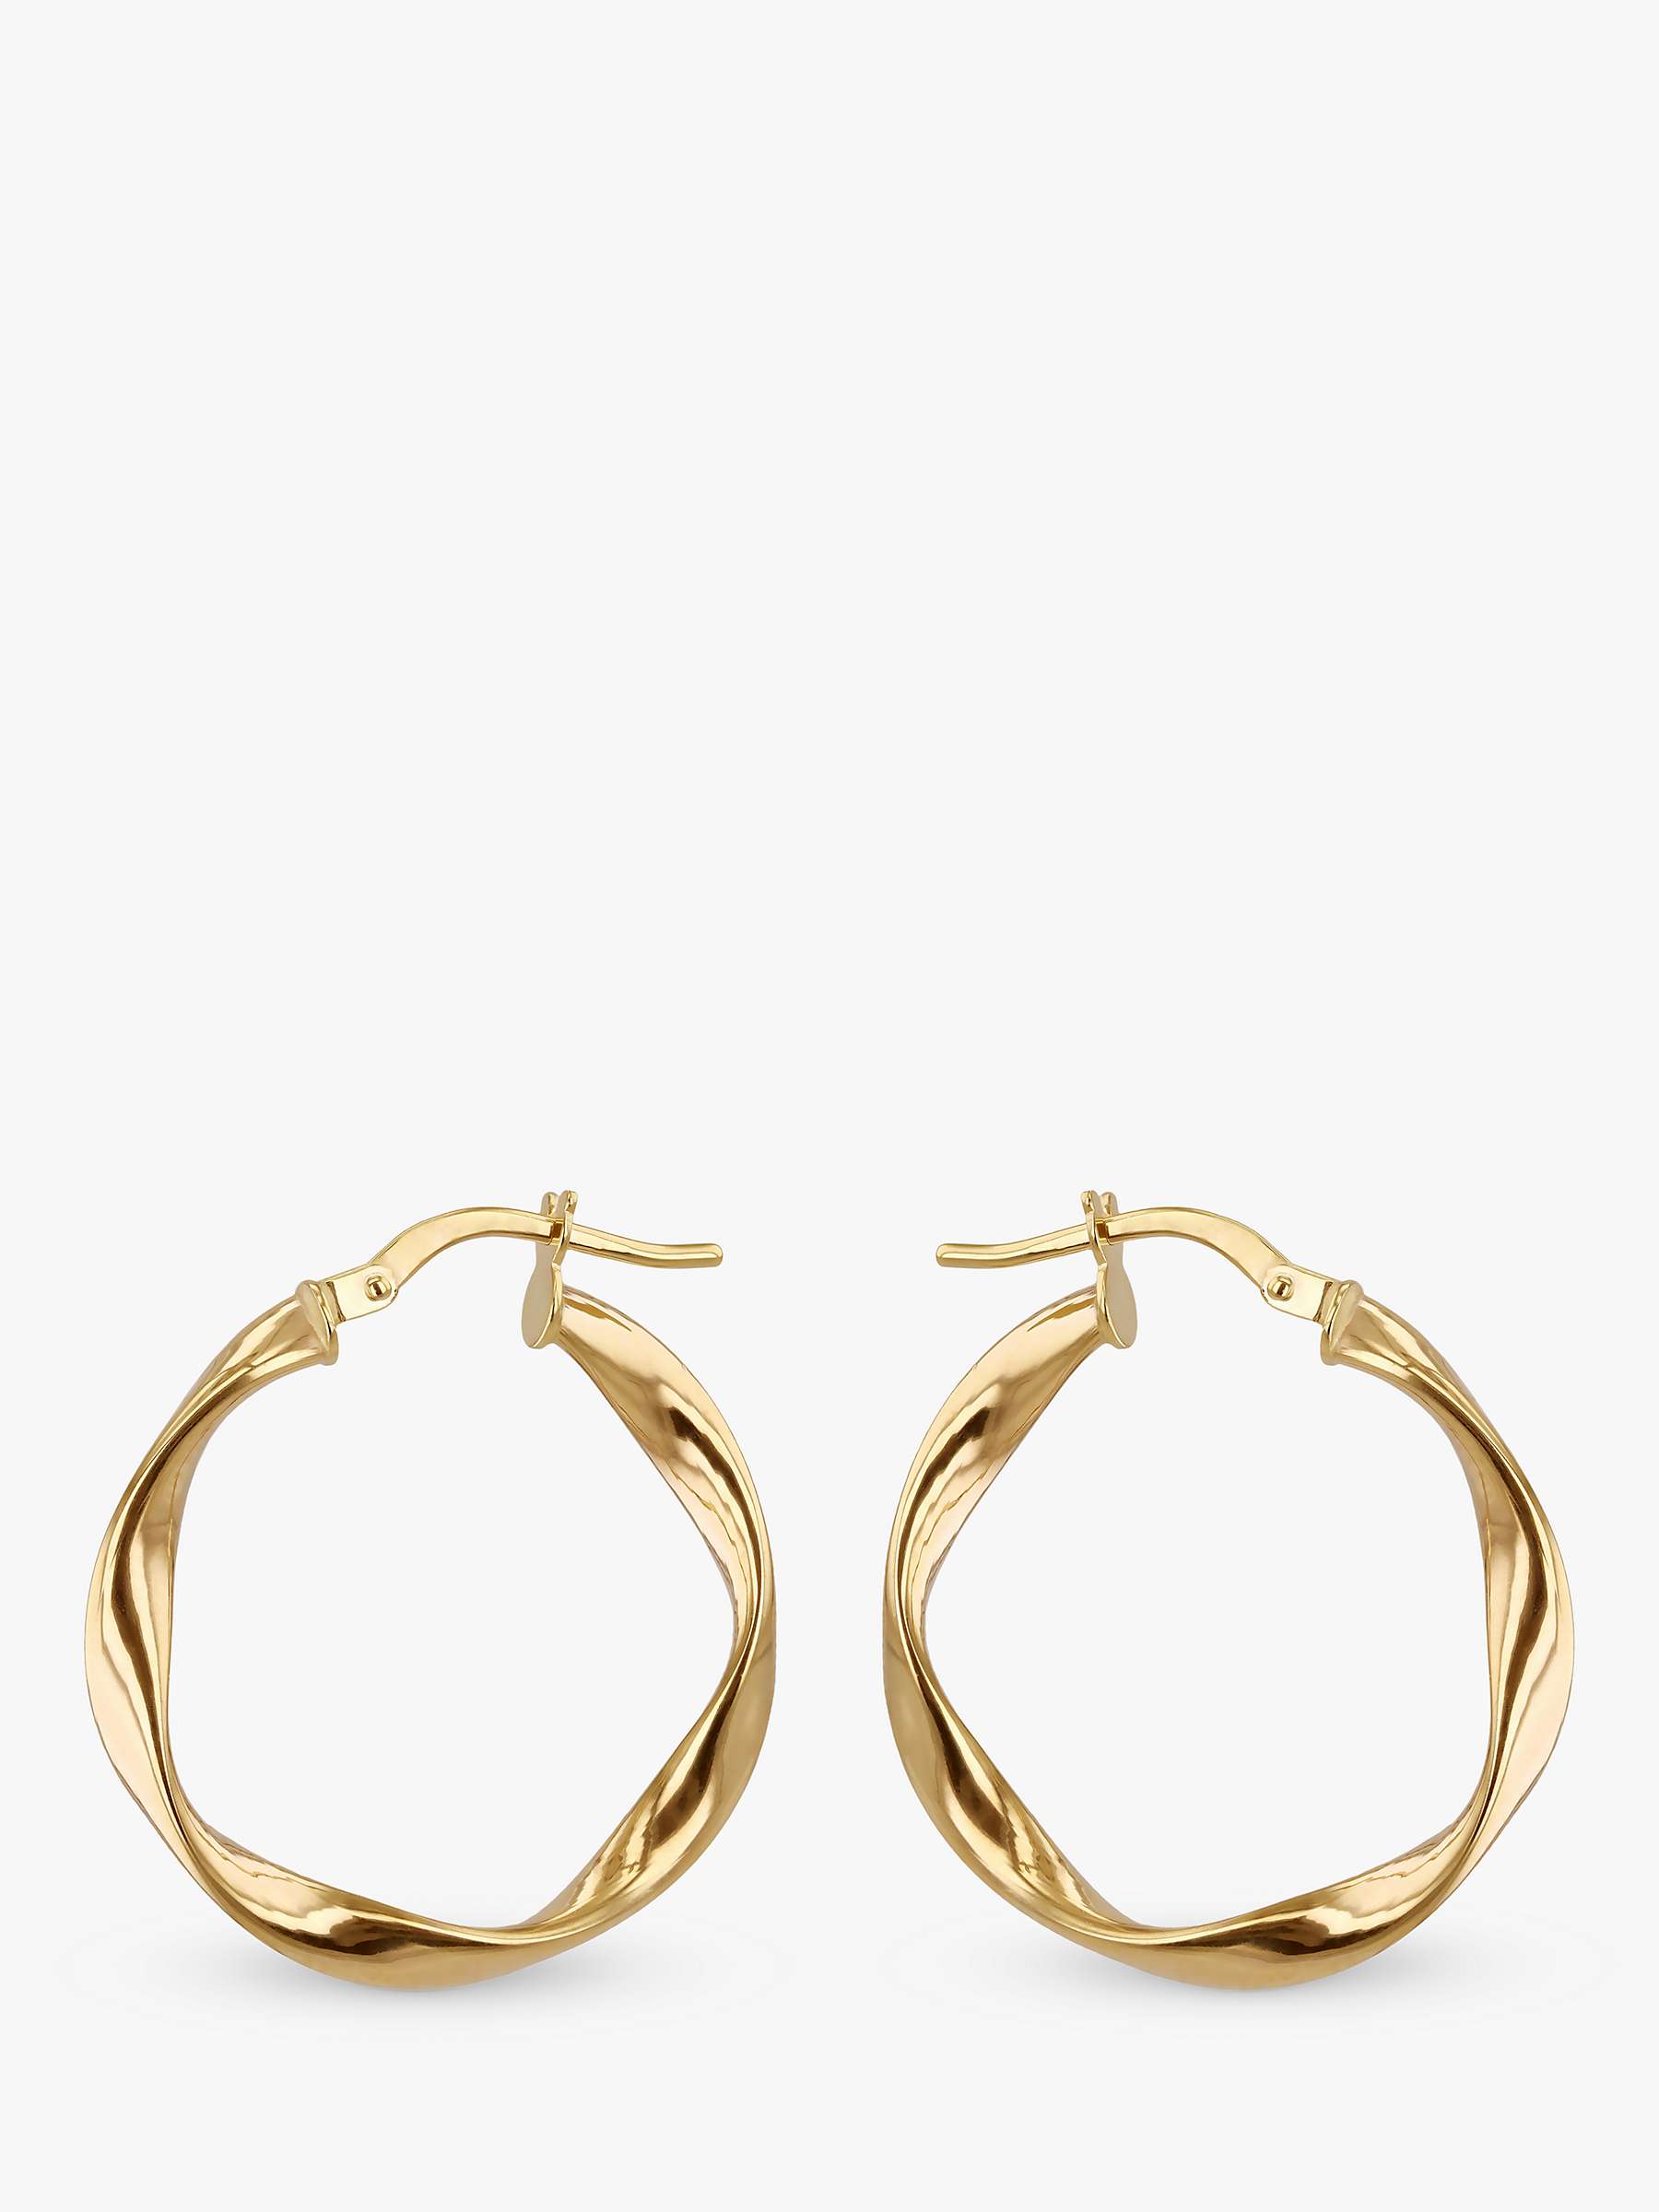 Buy IBB 9ct Gold Twist Hoop Earrings, Gold Online at johnlewis.com